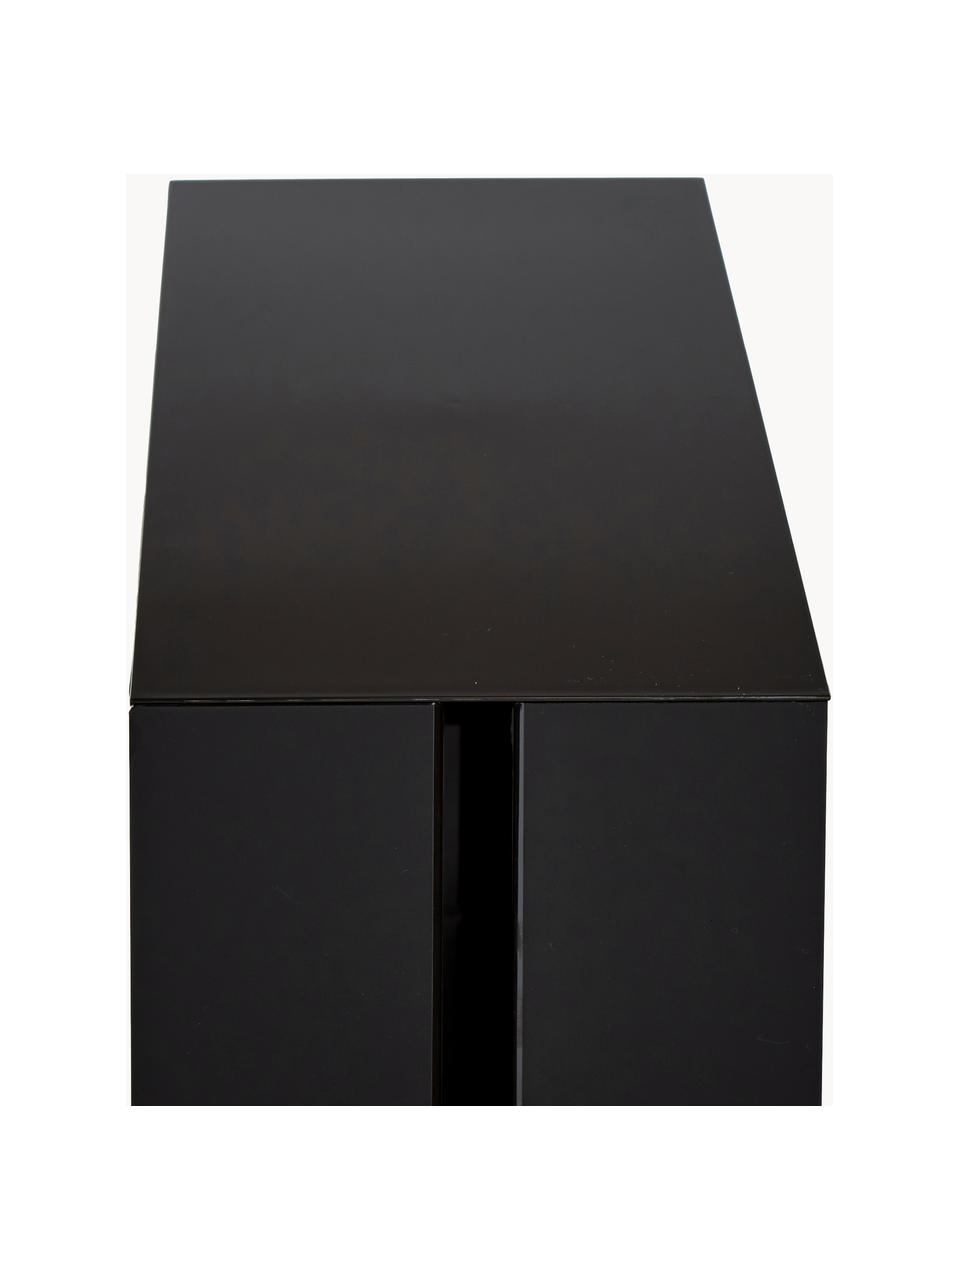 Pudełko na kable Web, Tworzywo sztuczne (poliwęglan), poliresing, Czarny, S 40 x W 15 cm